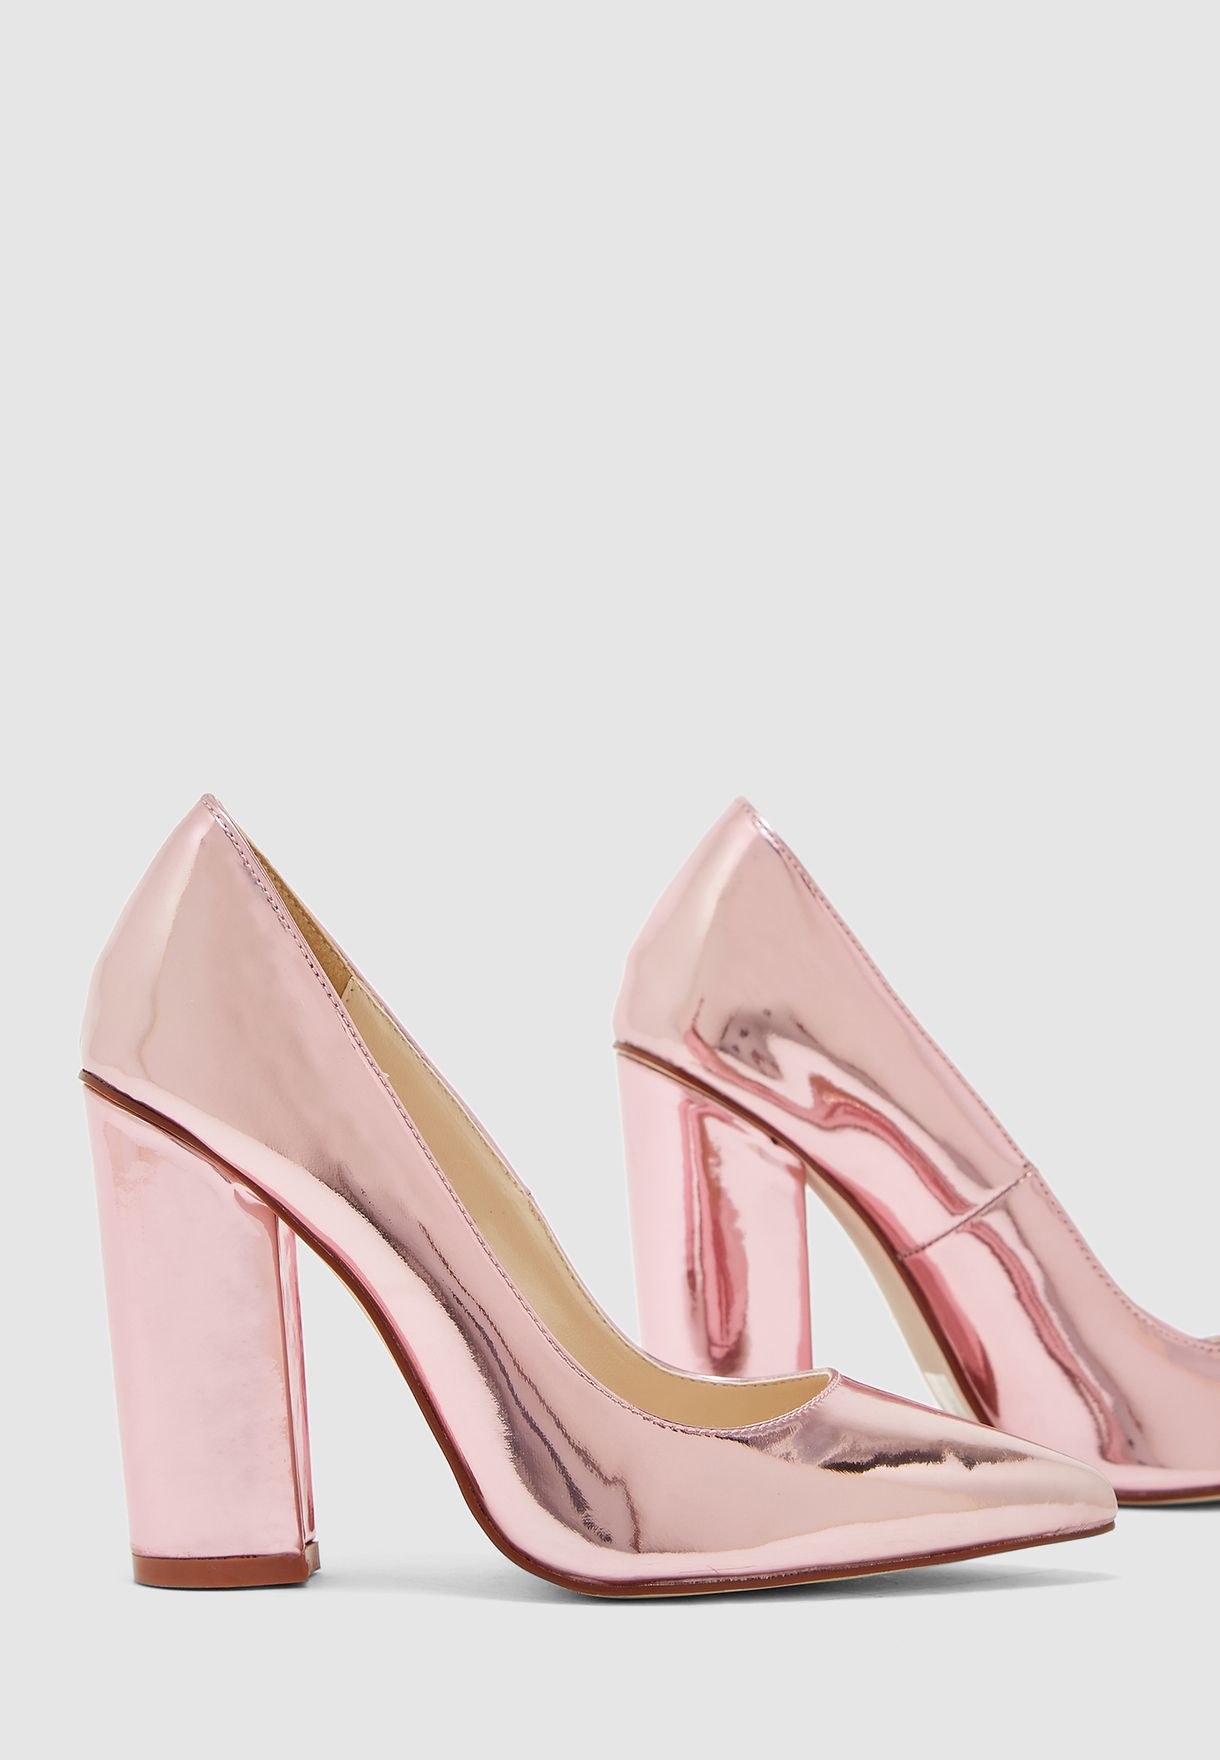 pink block heel pumps